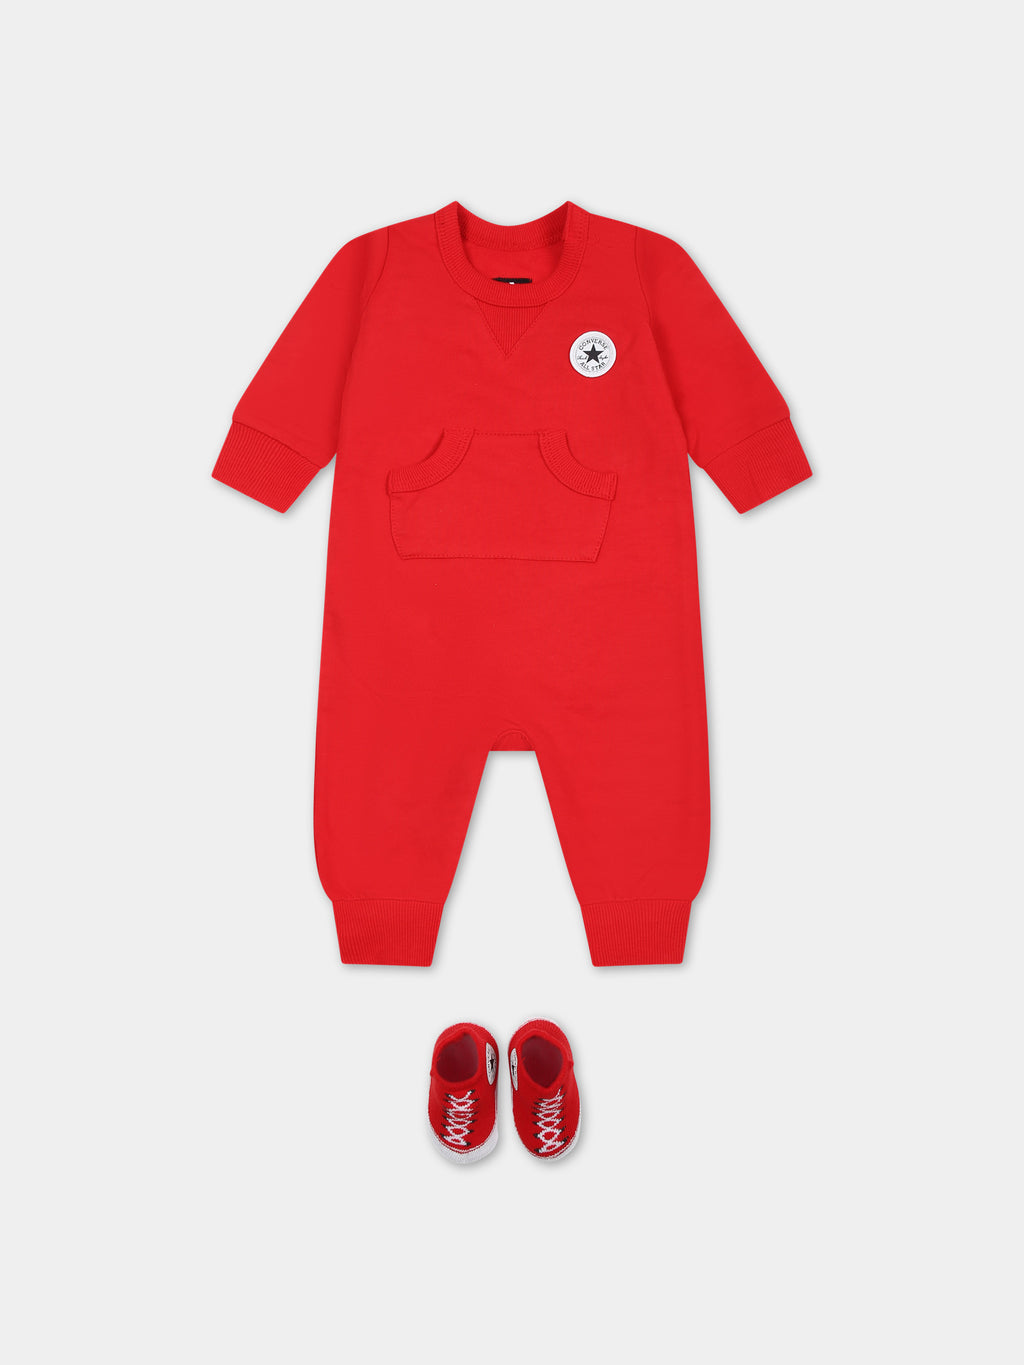 Ensemble rouge pour bébé garçon avec logo